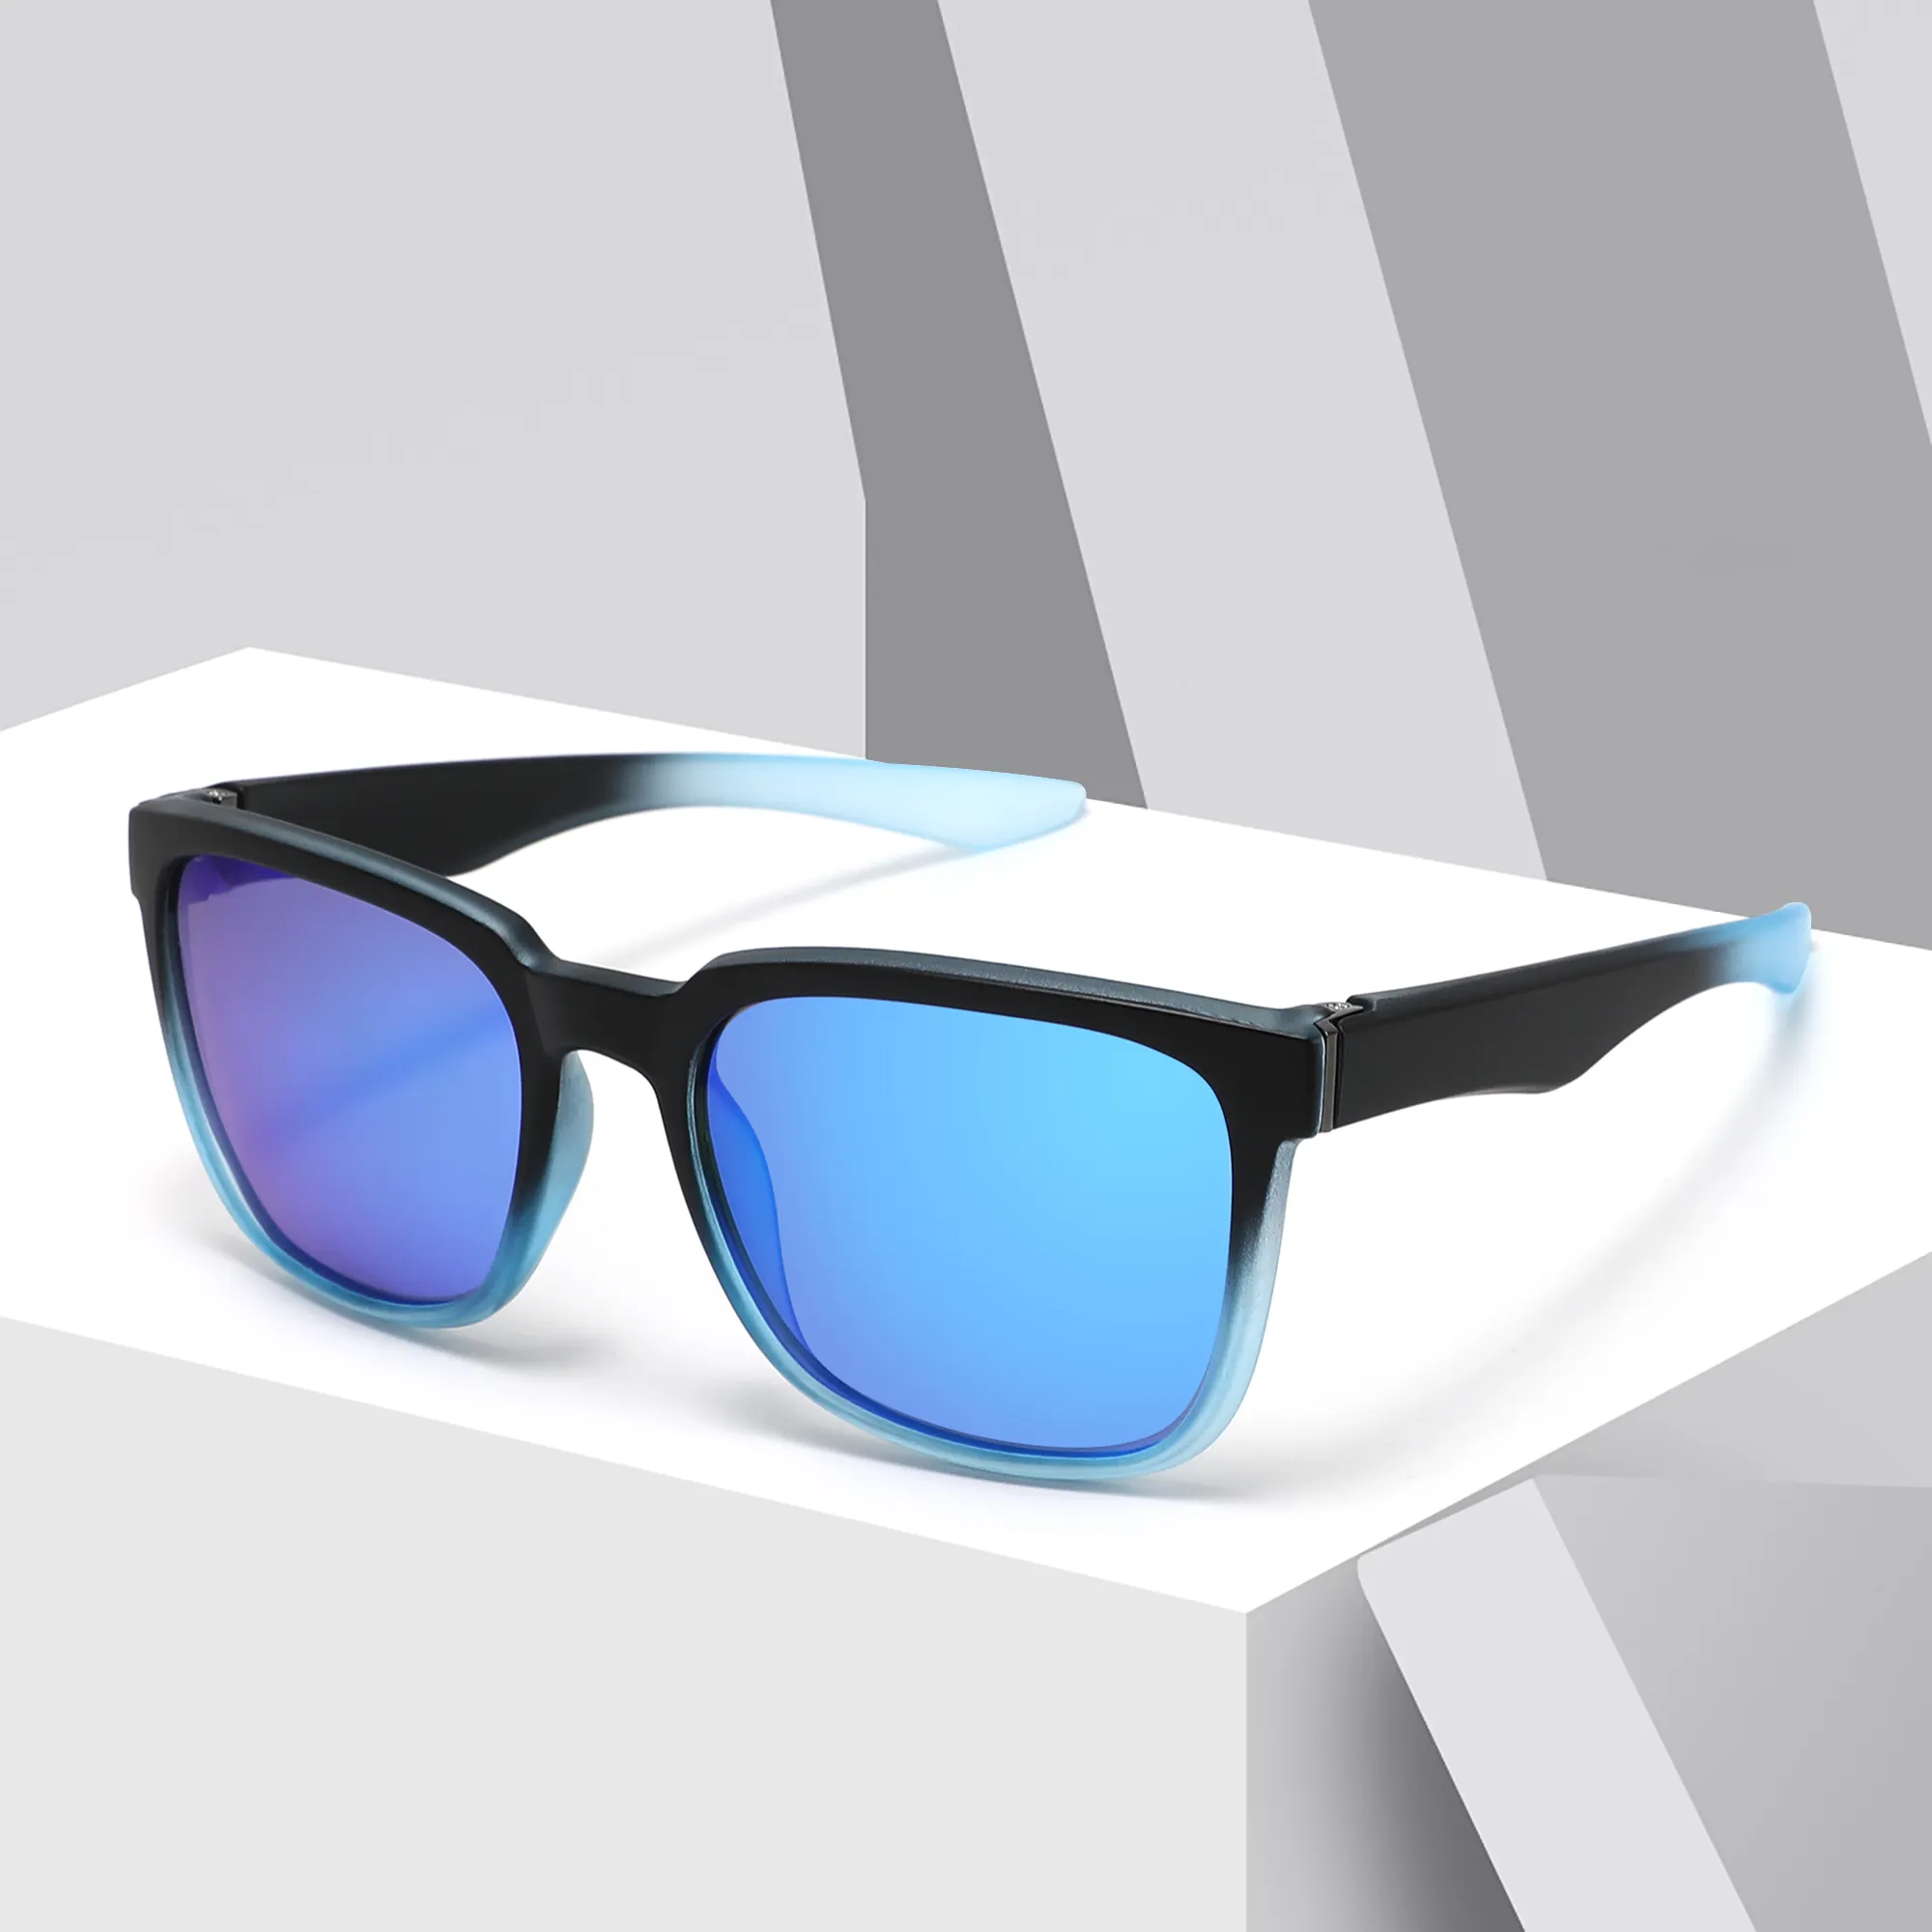 Hochwertige polarisierte Sports onnen brille Unisex PC-Rahmen UV400 Polarisierte Spiegel linse Sonnenbrille für Männer